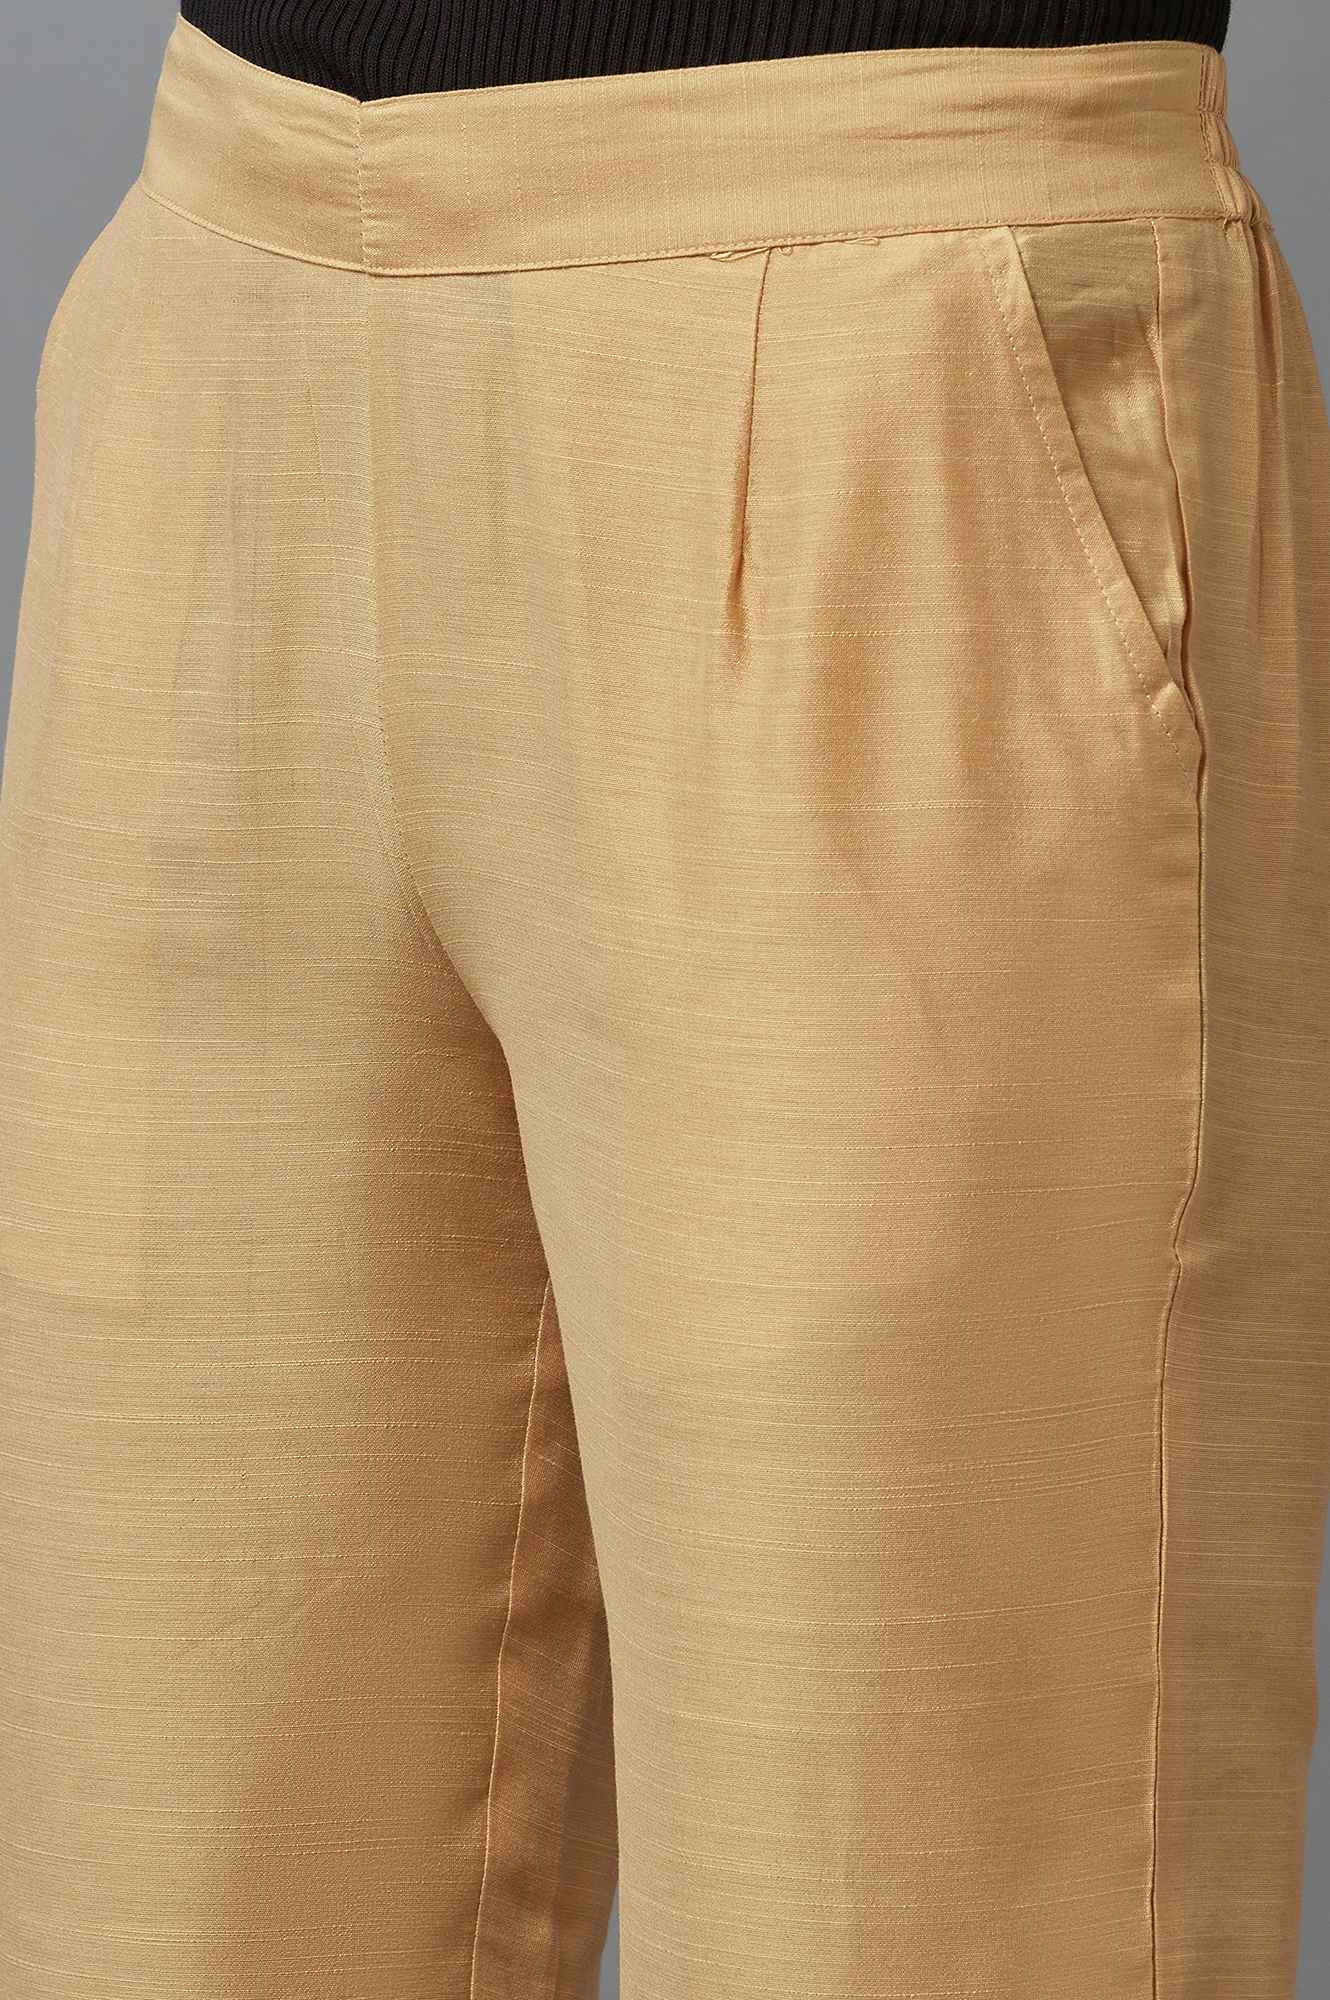 Elleven | Beige Festive Trousers 5